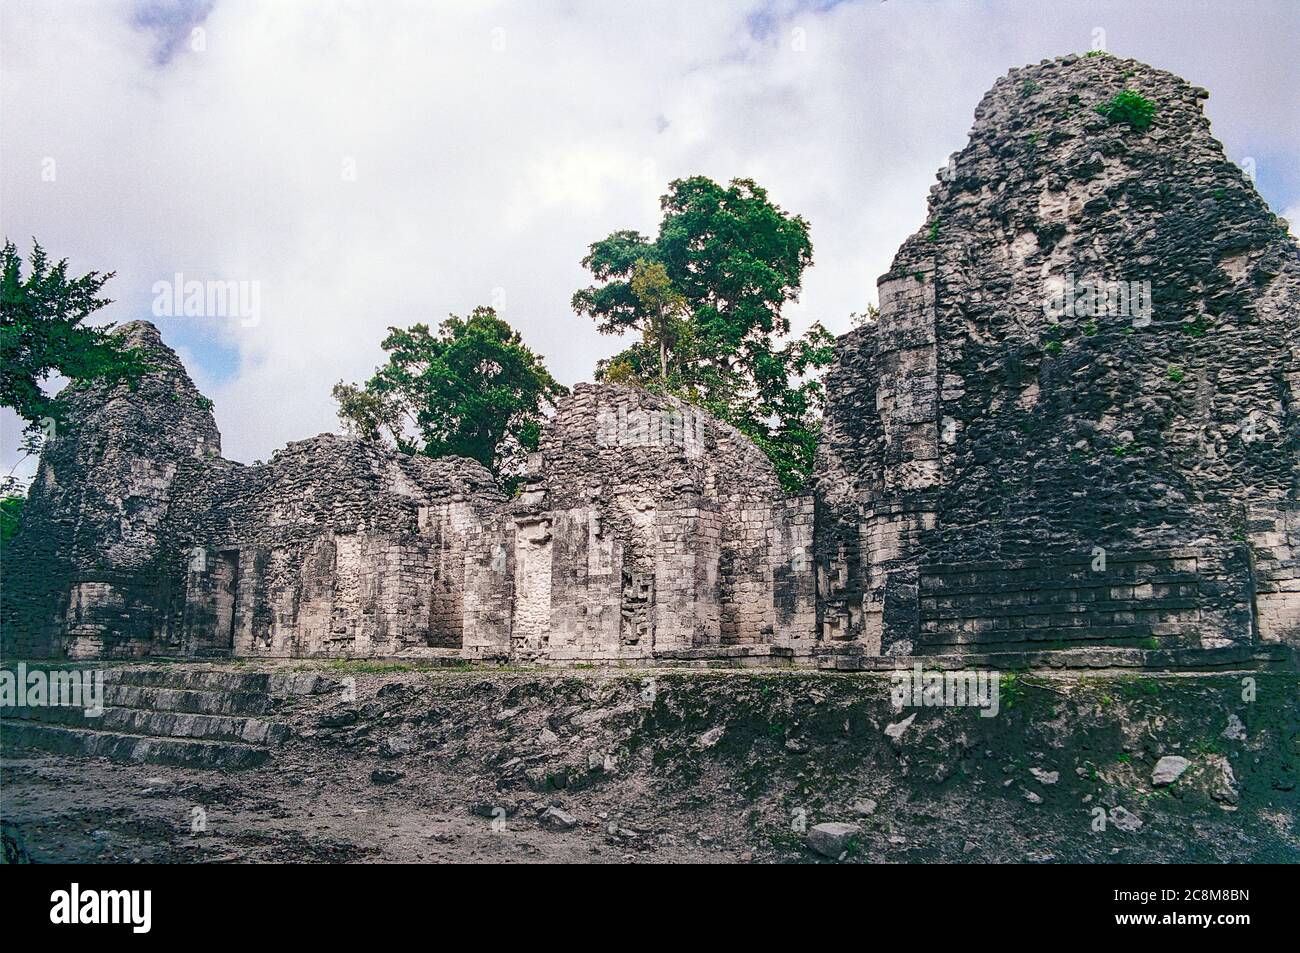 Struktur I an der Chicanna Maya Ruinen hat zwei Türme. Campeche, Mexiko. Vintage Film Bild - ca. 1990. Stockfoto